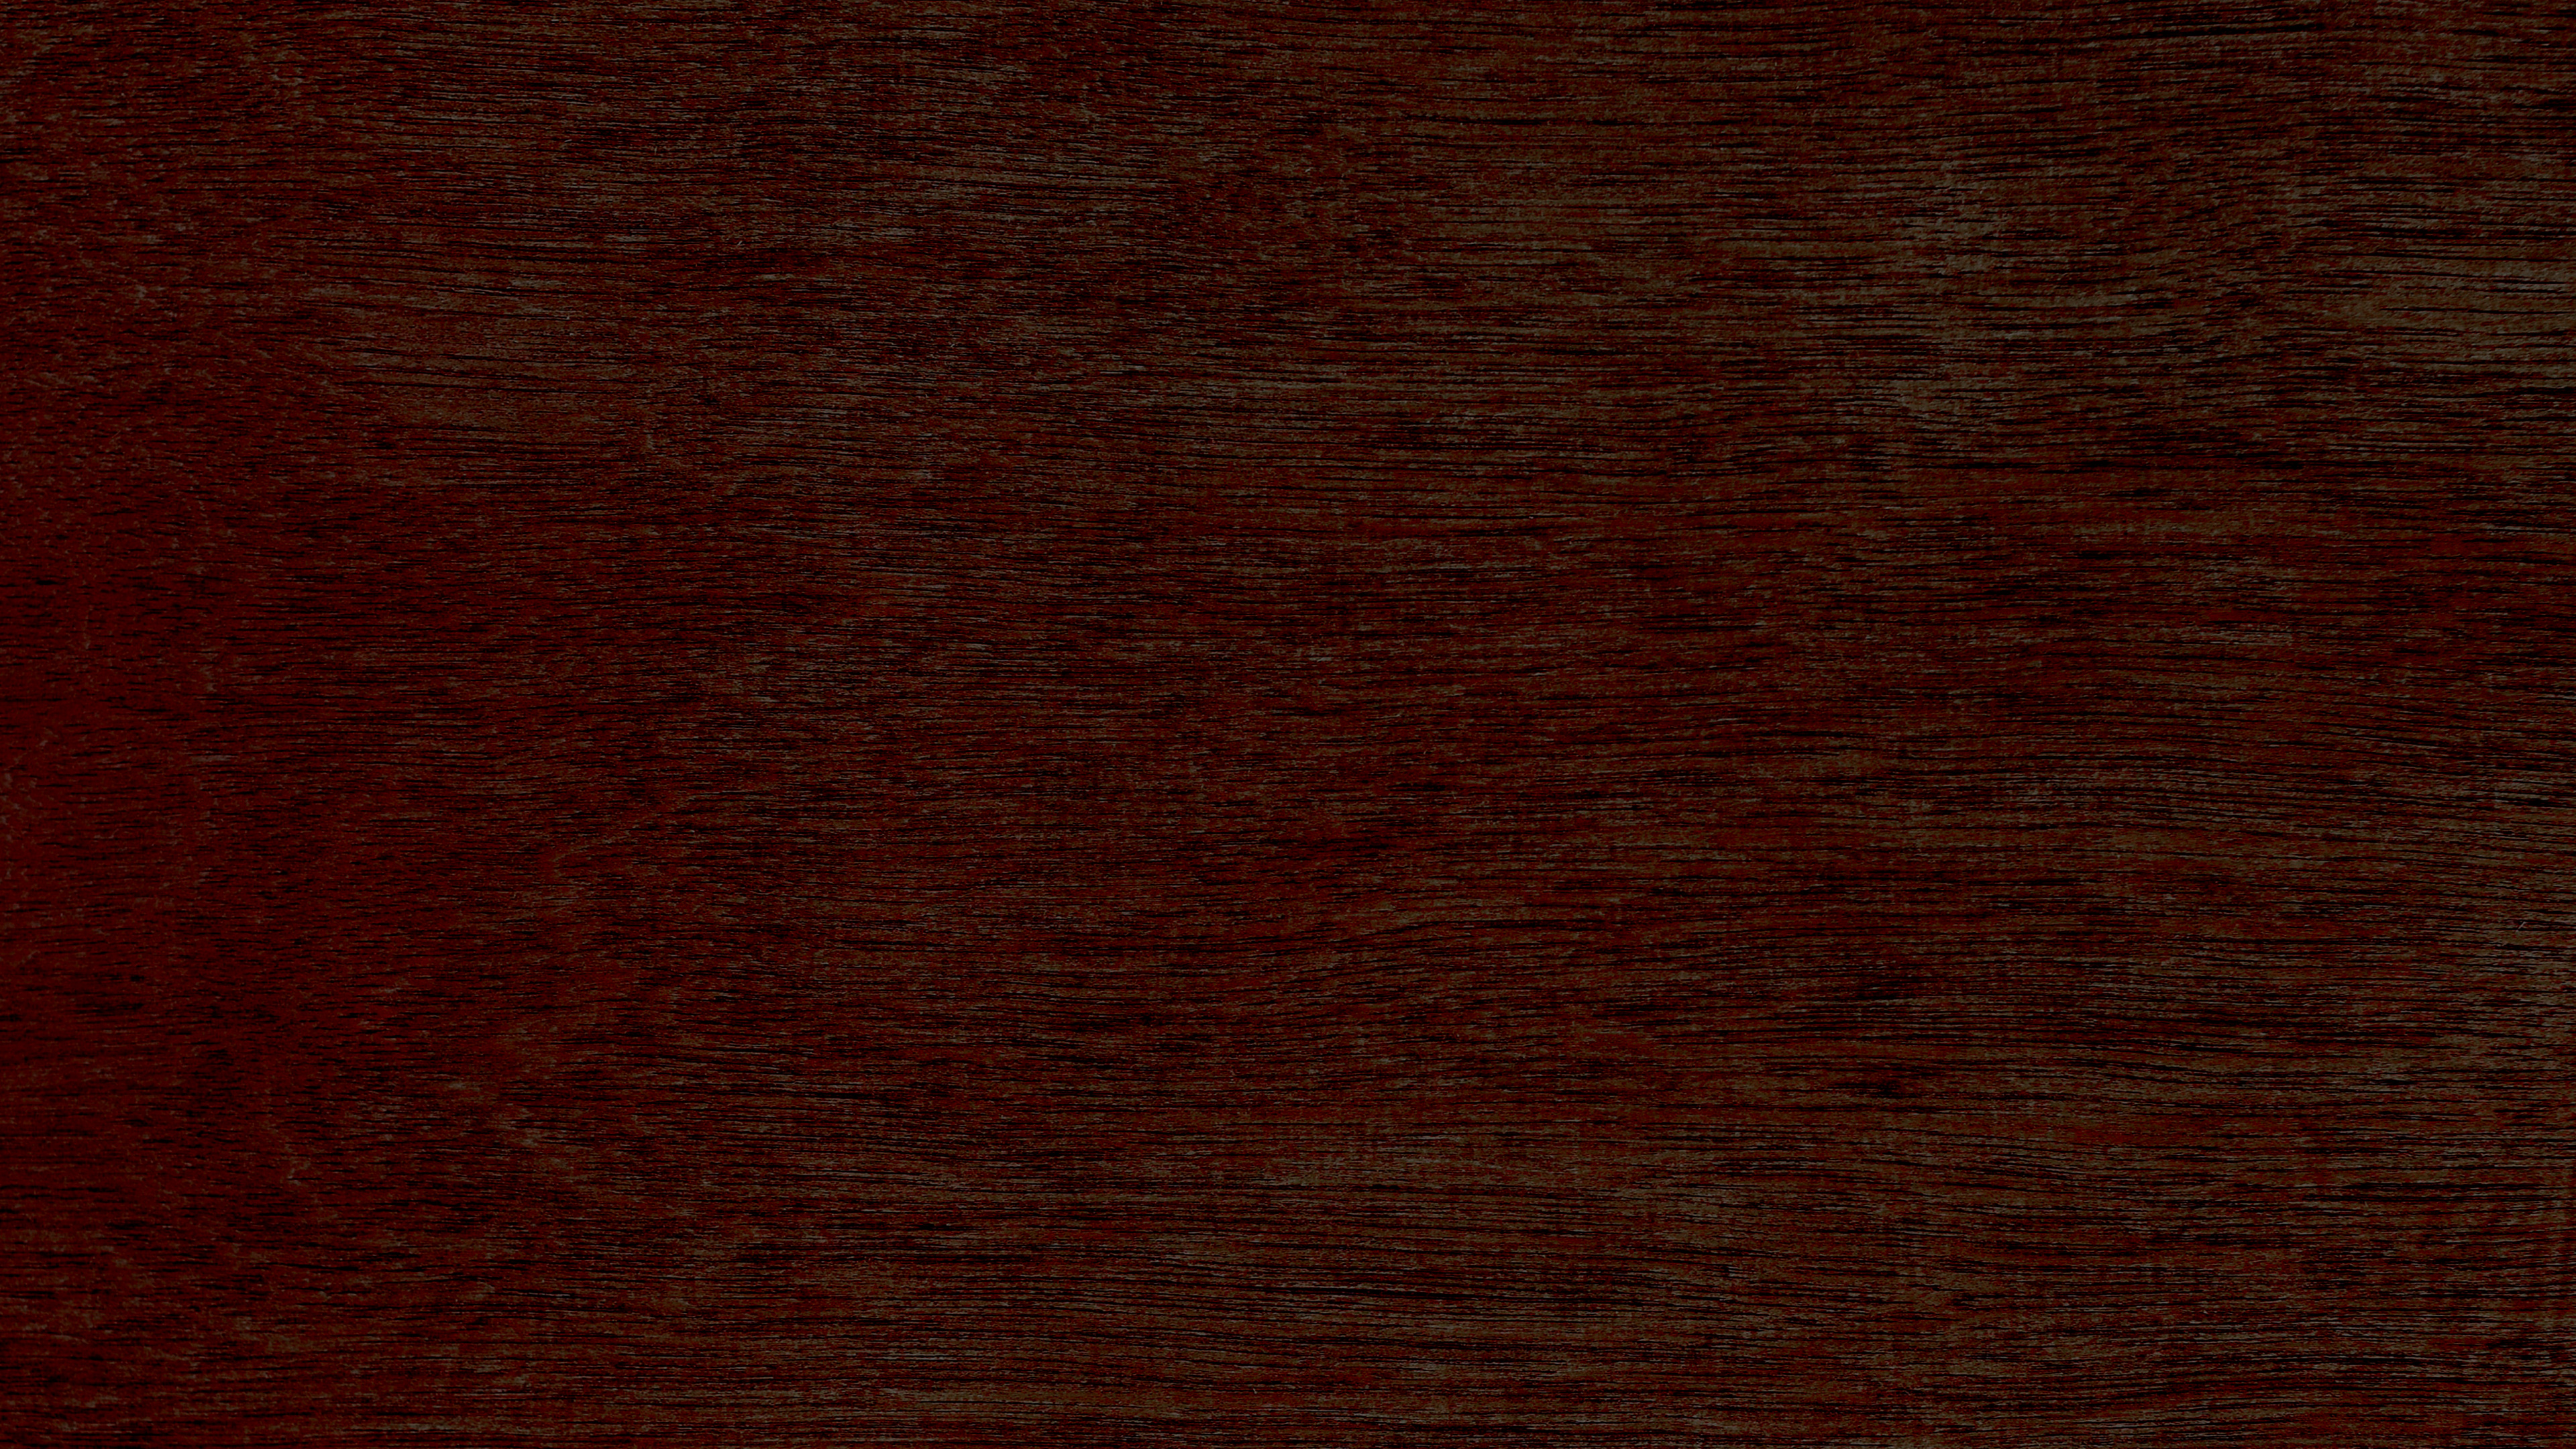 硬木, 木染色, 棕色, 木, 焦糖色素 壁纸 3840x2160 允许